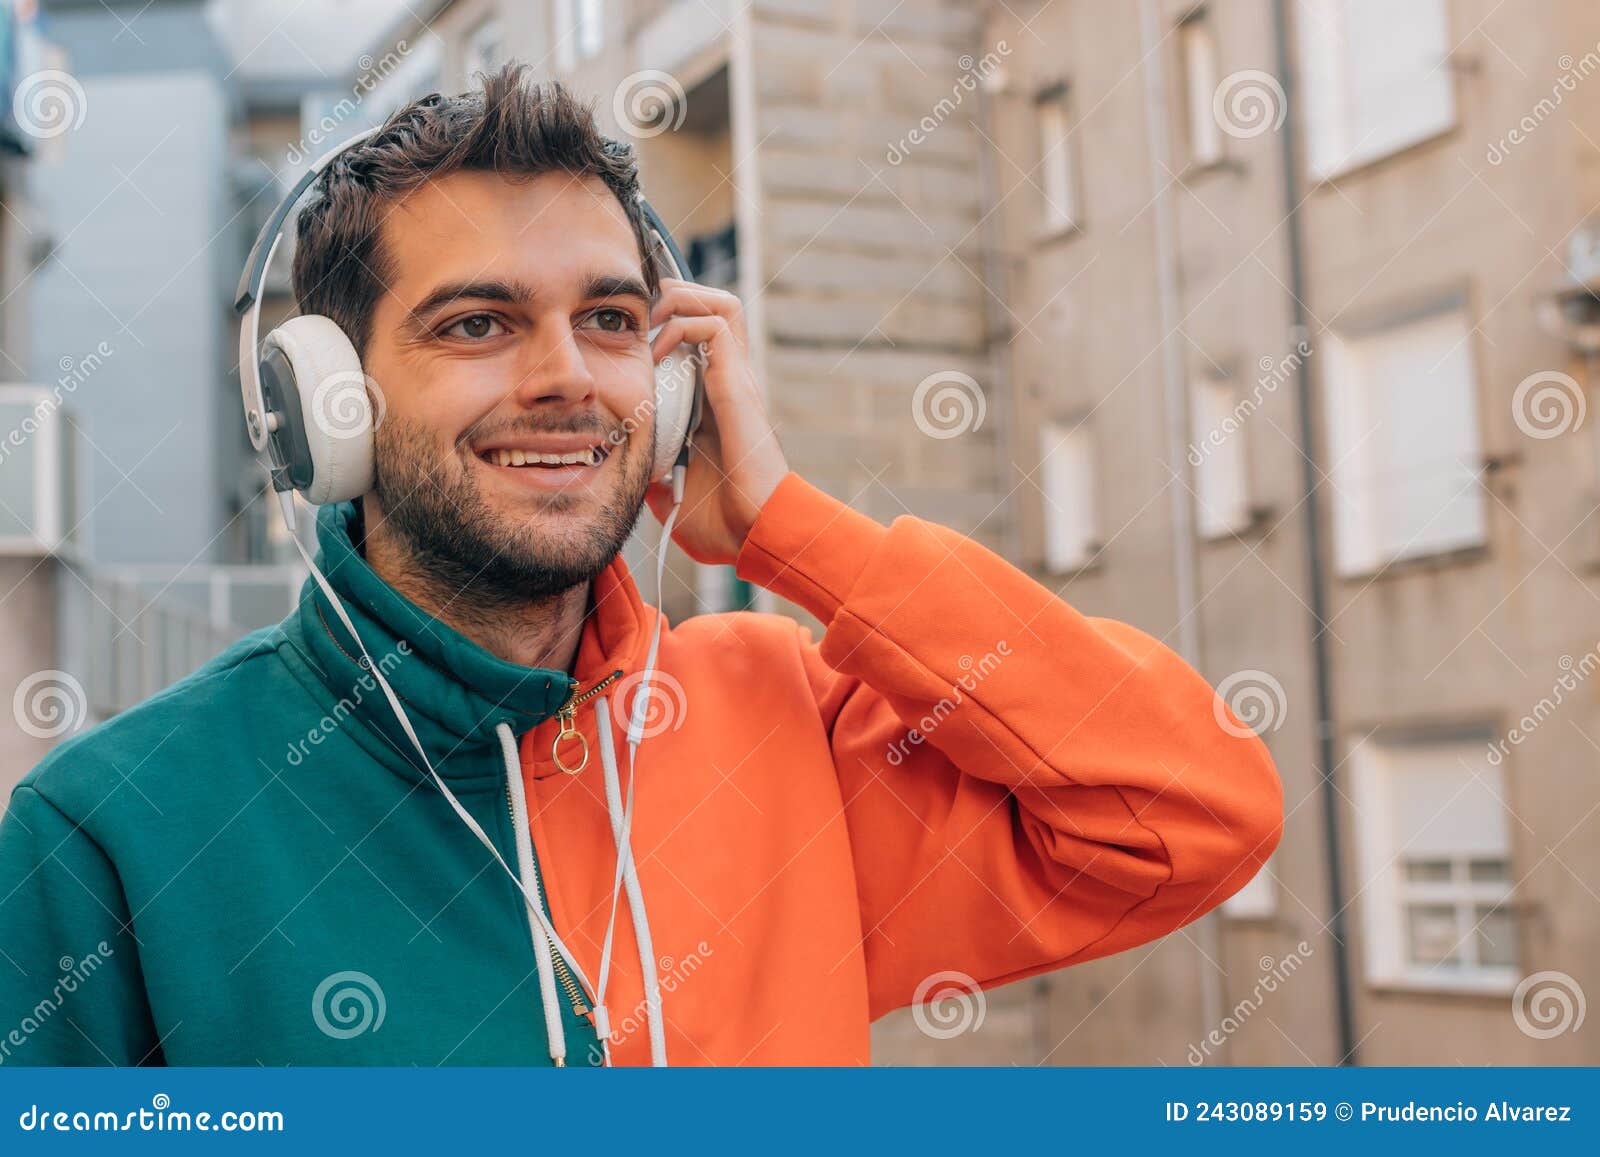 戴耳机的男人 库存图片. 图片 包括有 音乐, 乐趣, 招待, 易上镜头, 声音, 街道, 户外, 证券 - 243089217